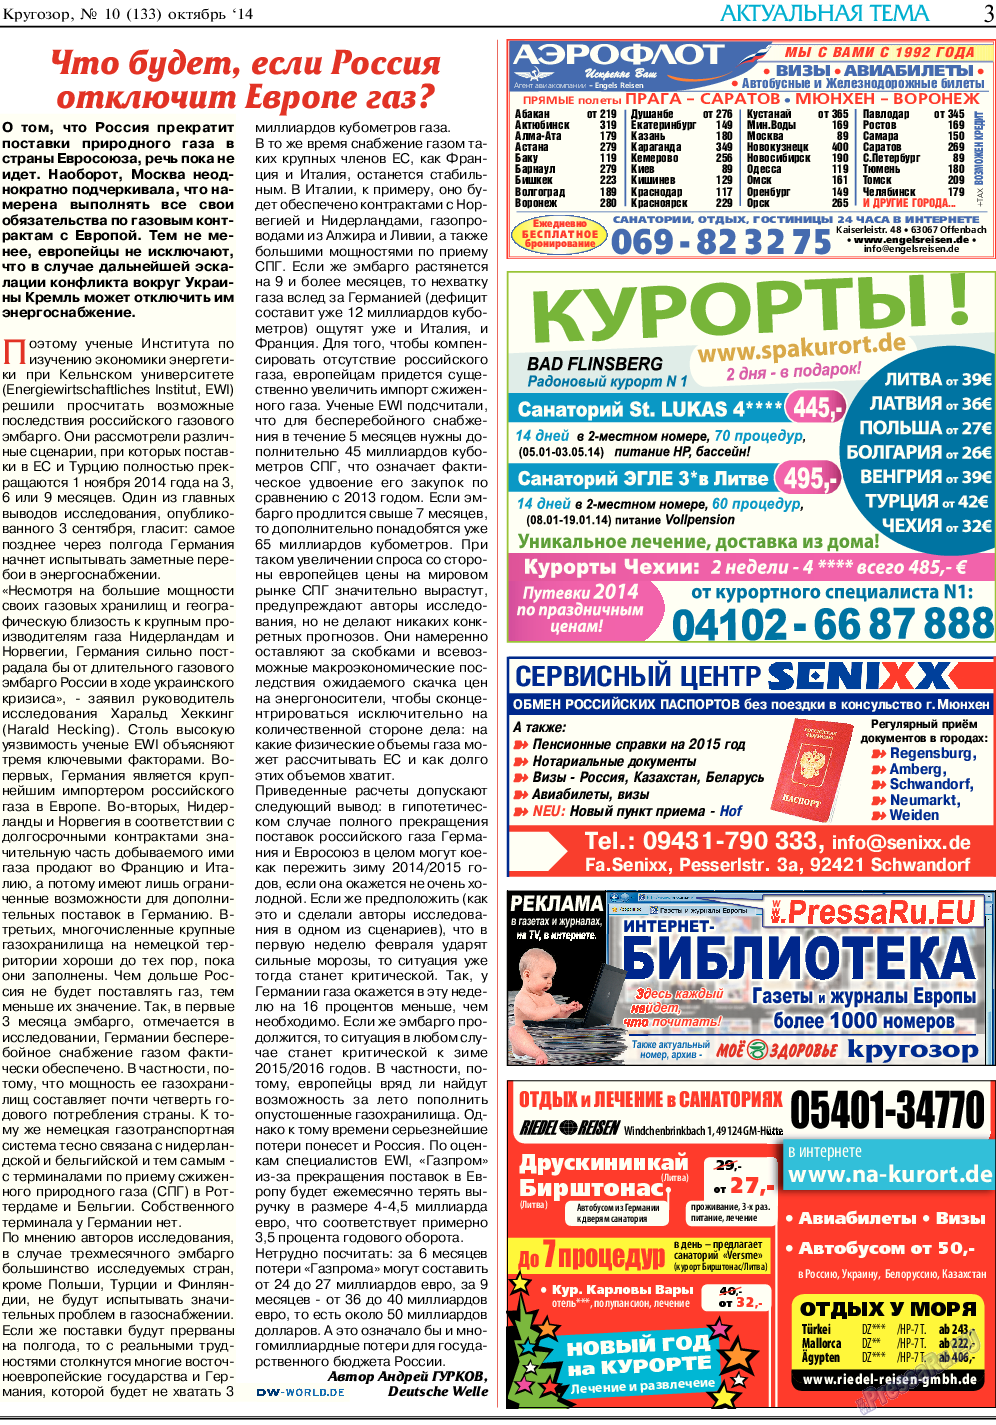 Кругозор, газета. 2014 №10 стр.3